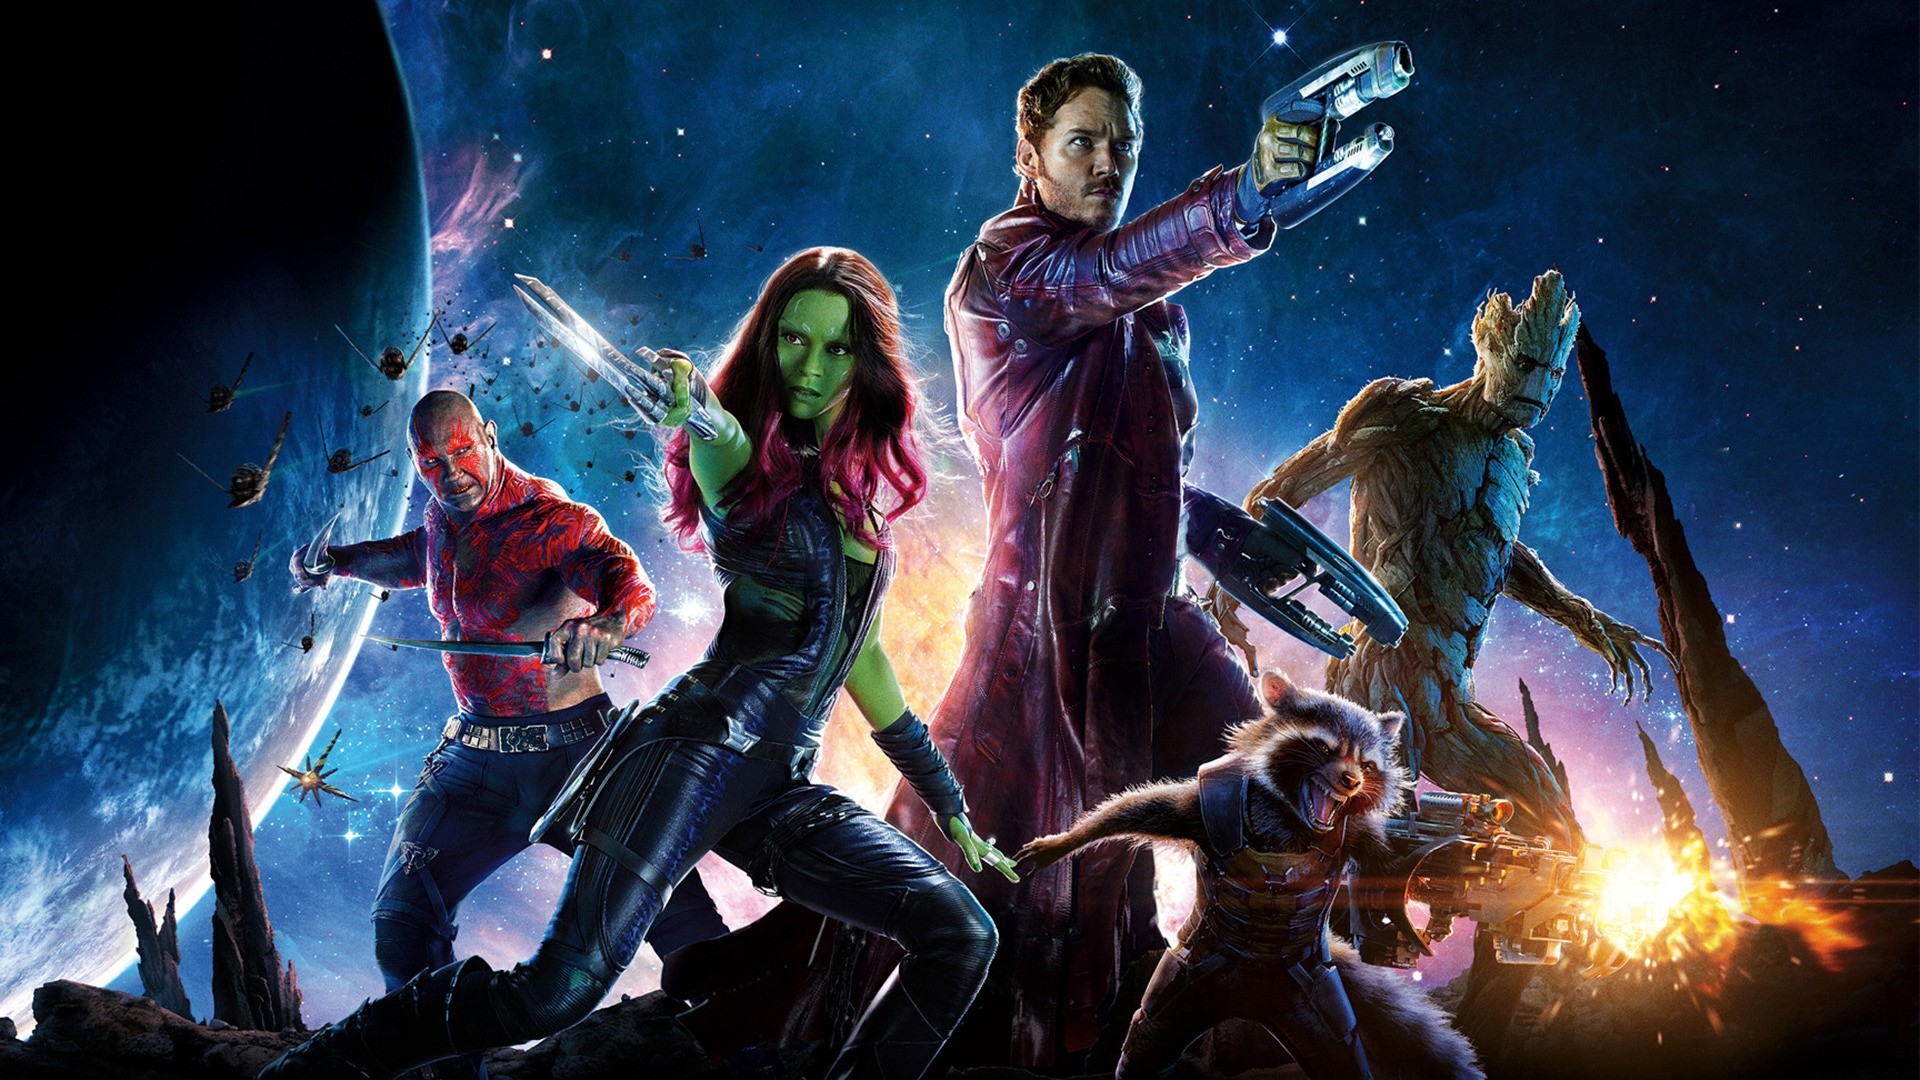 Guardians Of The Galaxy, Star Lord, Gamora, Rocket Raccoon, Groot, Drax